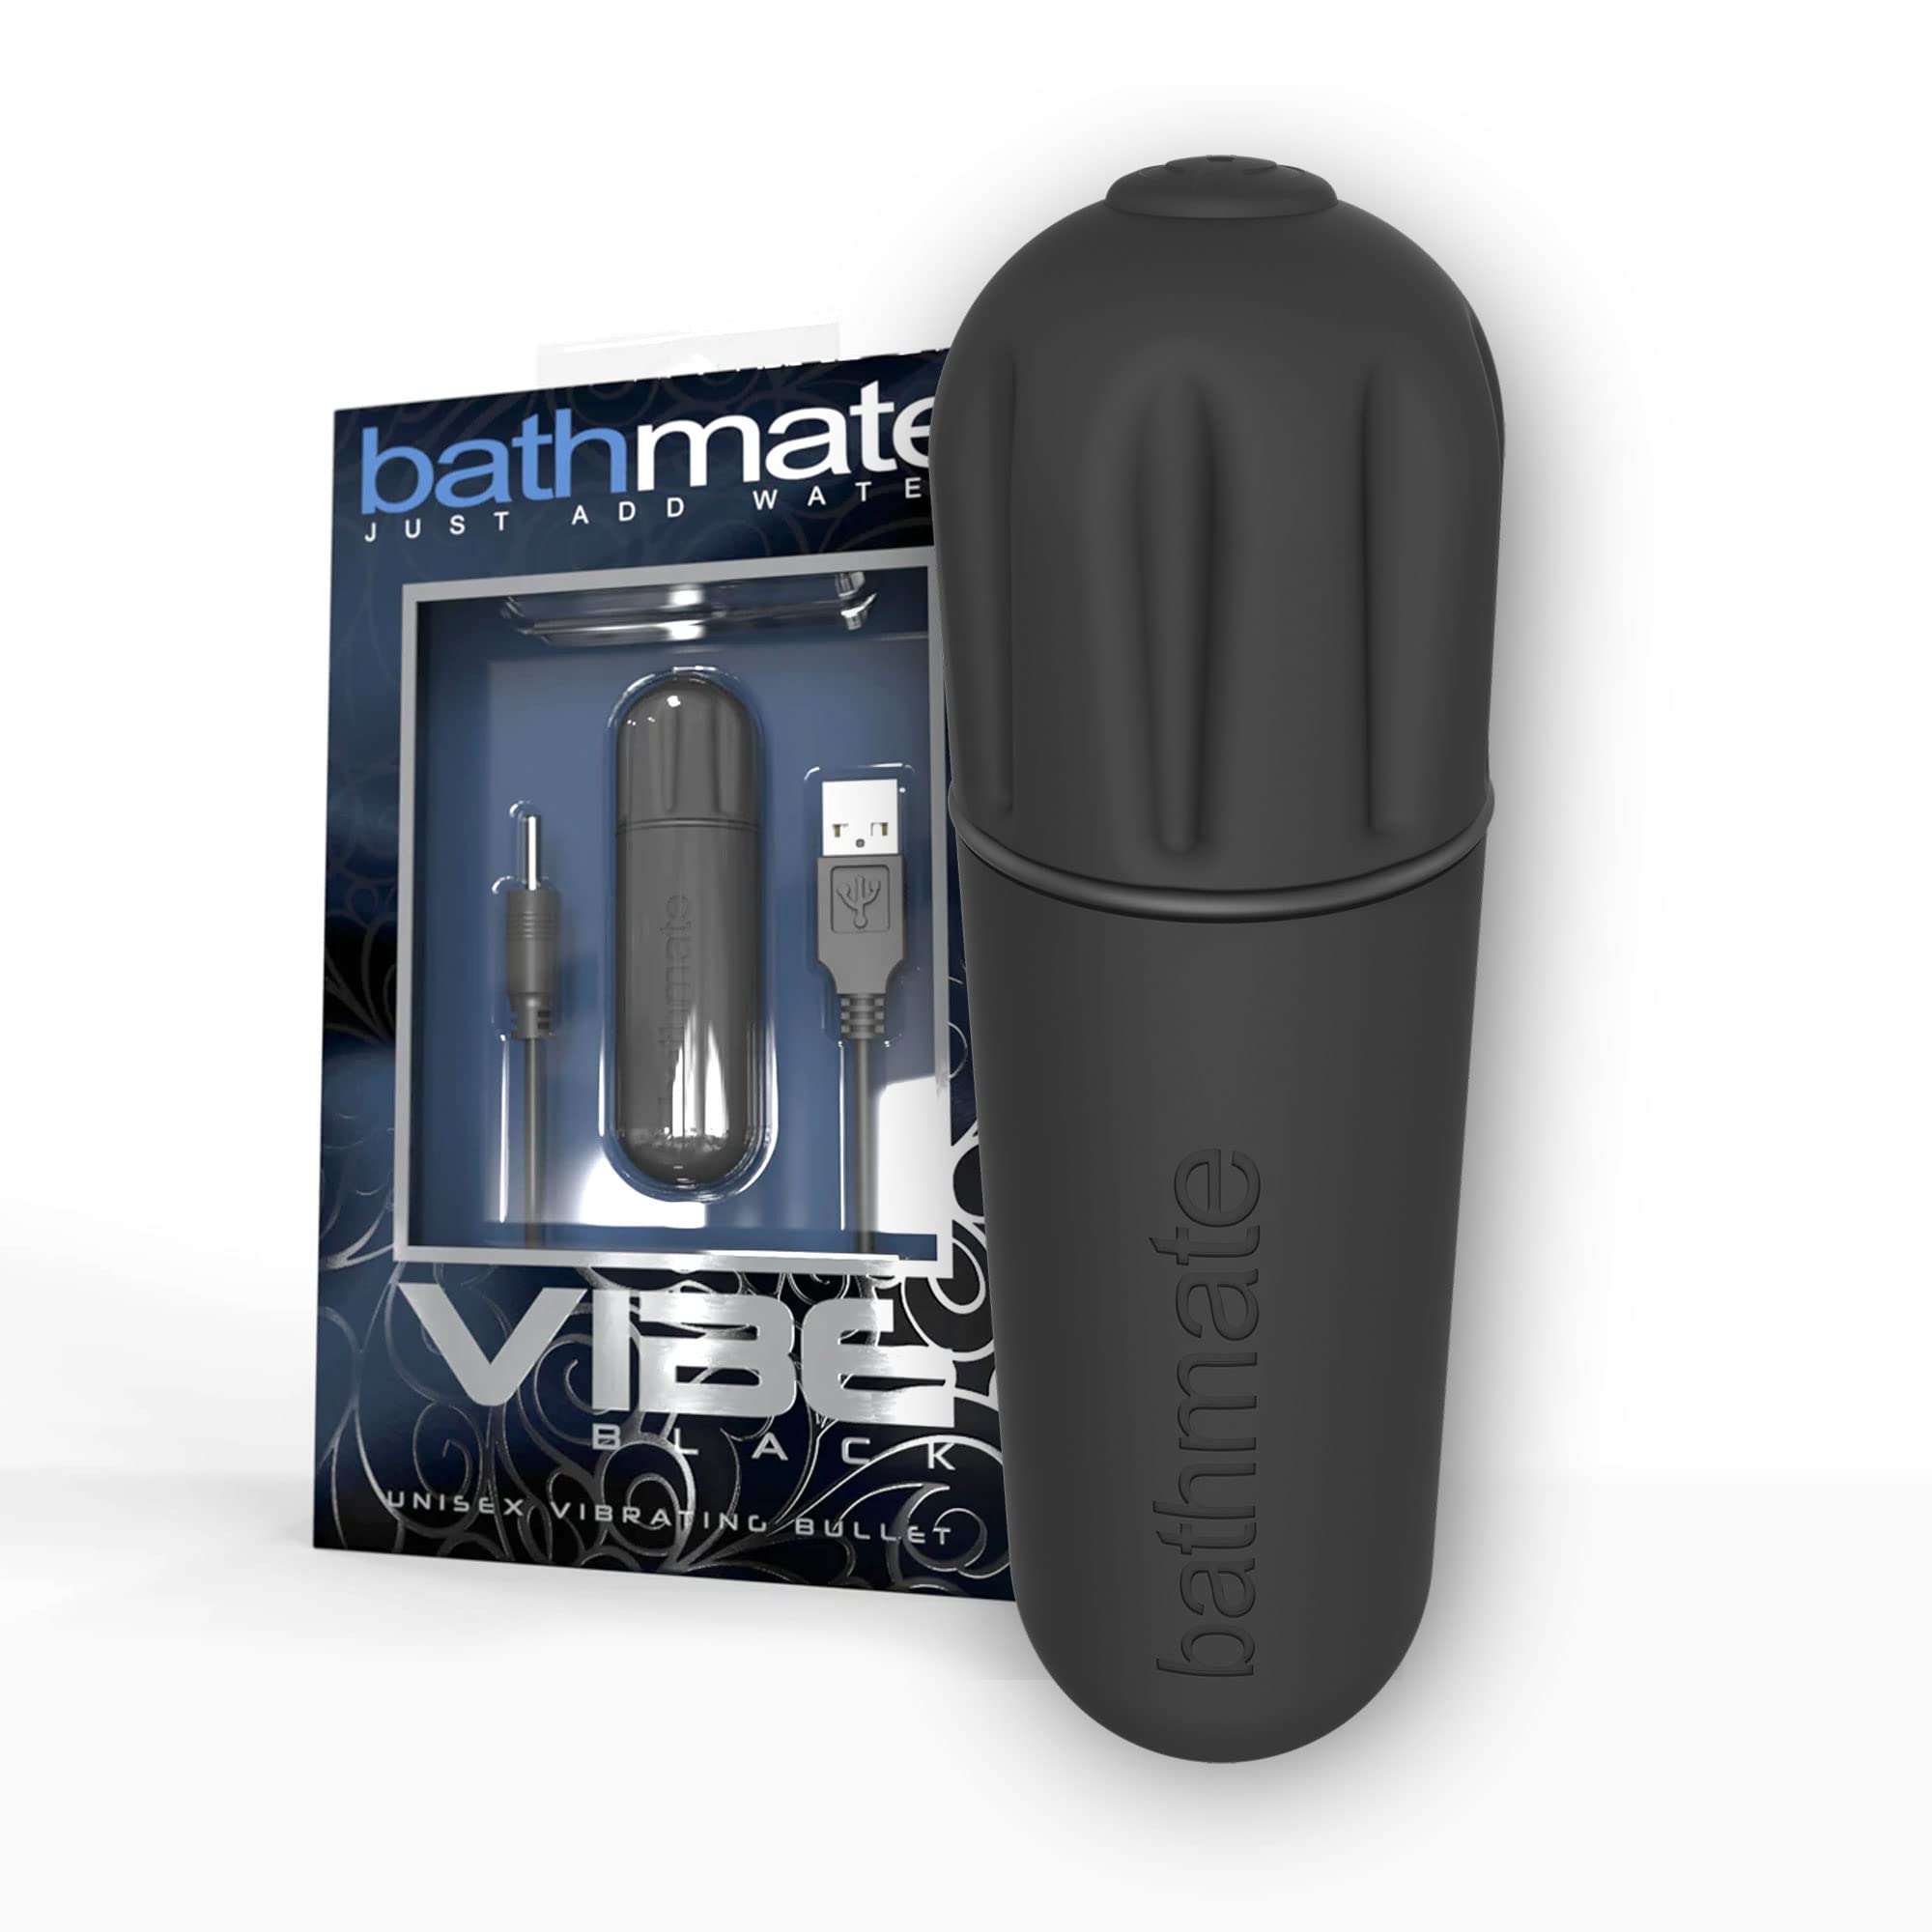 BATHMATE - VIBE BLACK VIBRATING BULLET